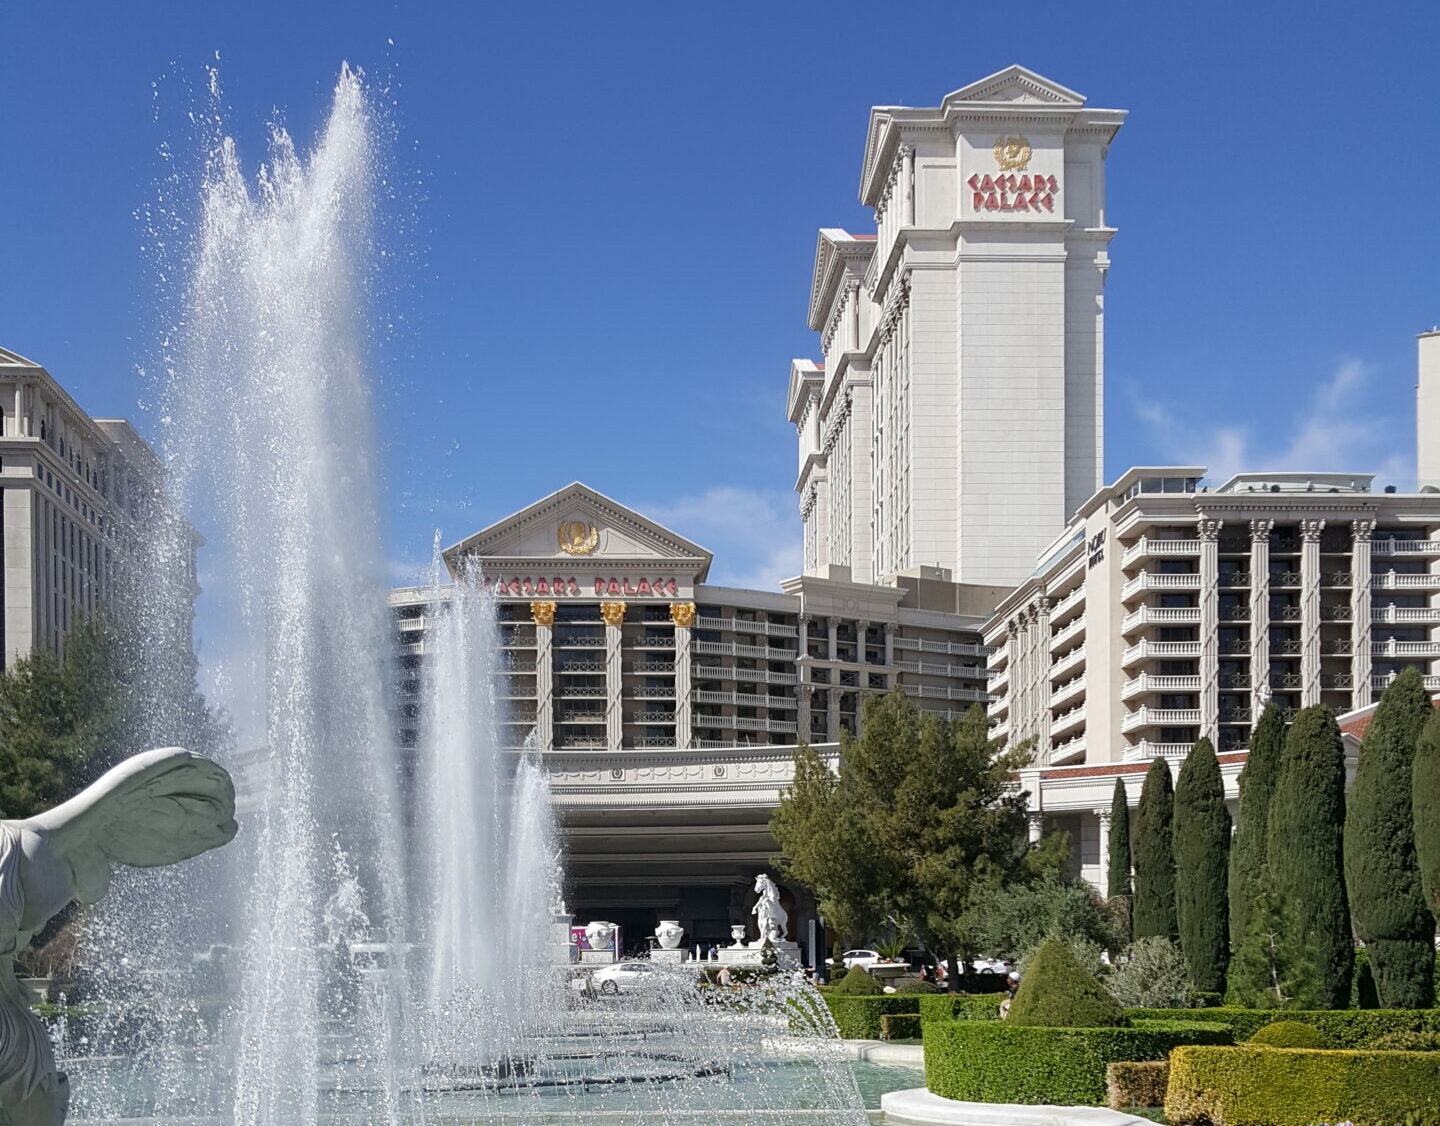 Wynn, MGM und Caesars - die großen Casinobetreiber aus Las Vegas sind schon mit Hotels in den VAE vertreten